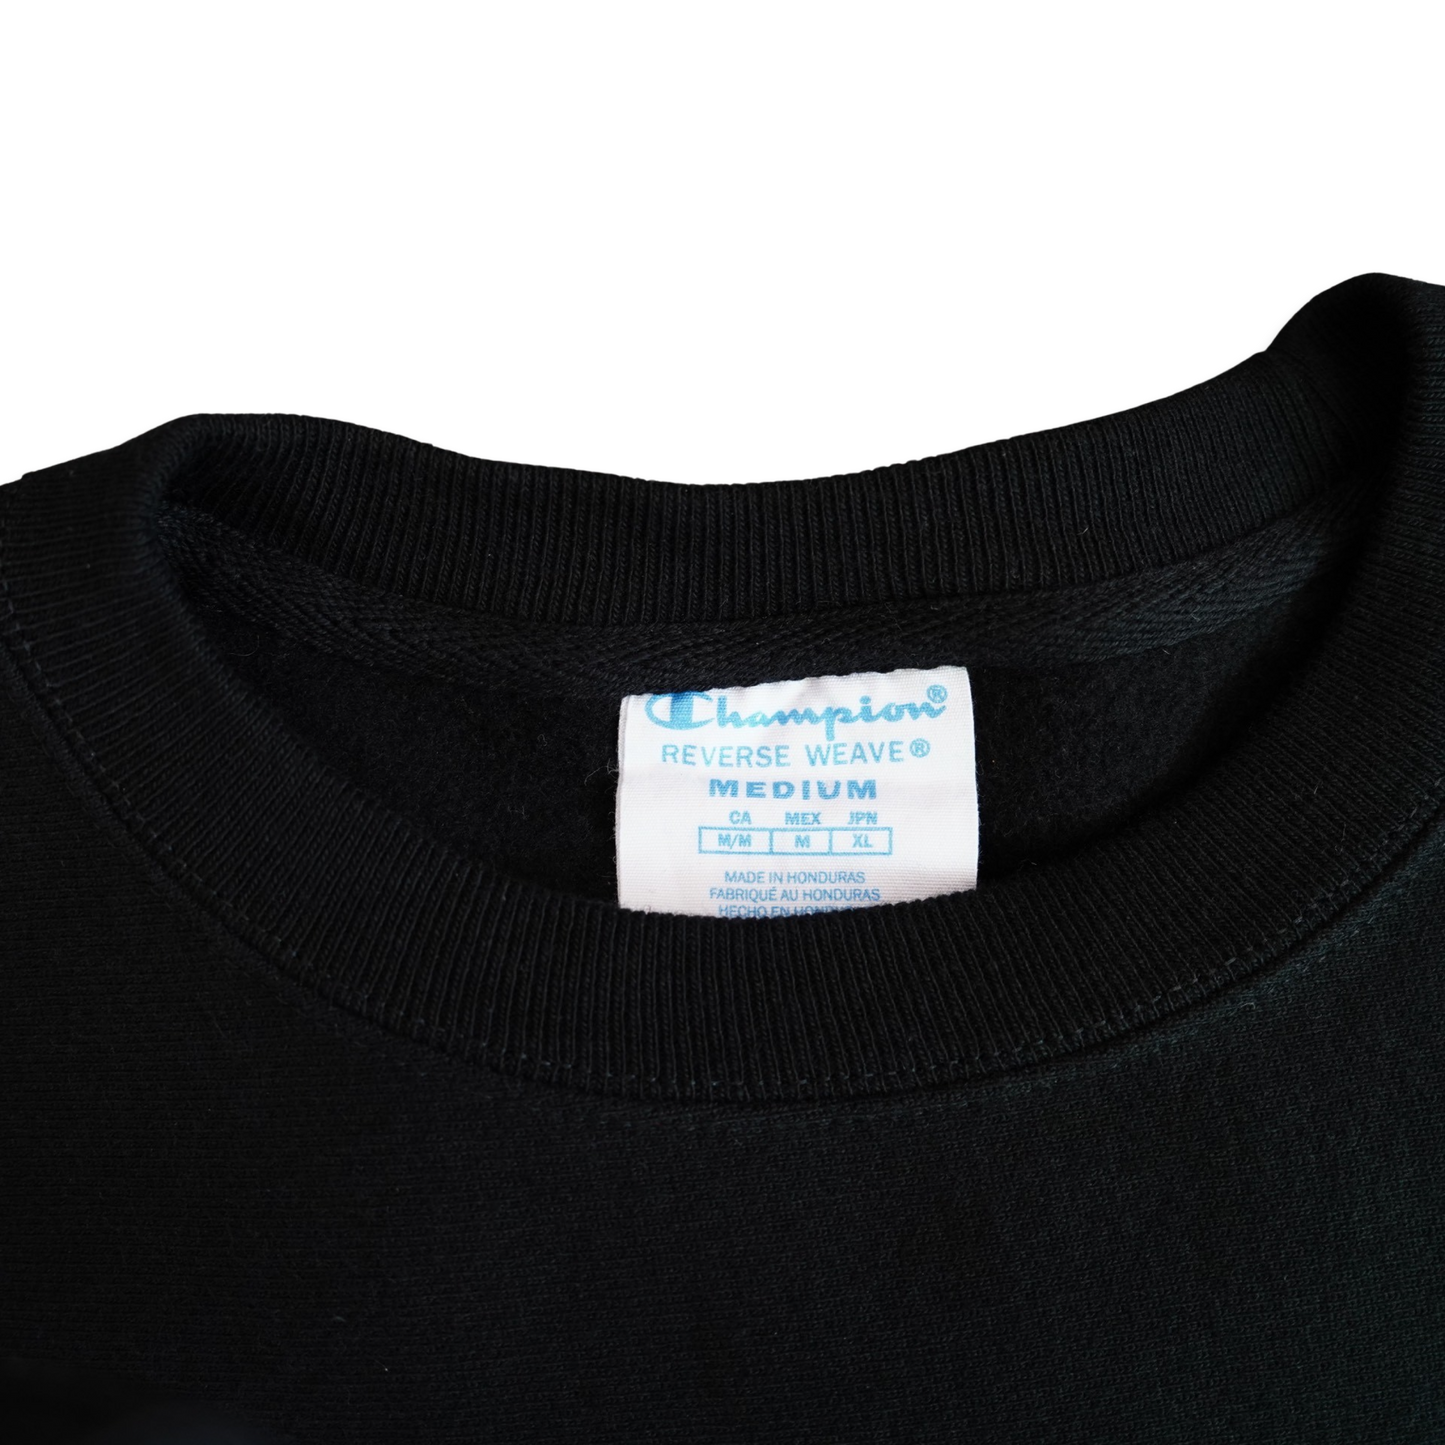 "Scene in Black" by HBOmax Champion Reverse Weave Sweatshirt